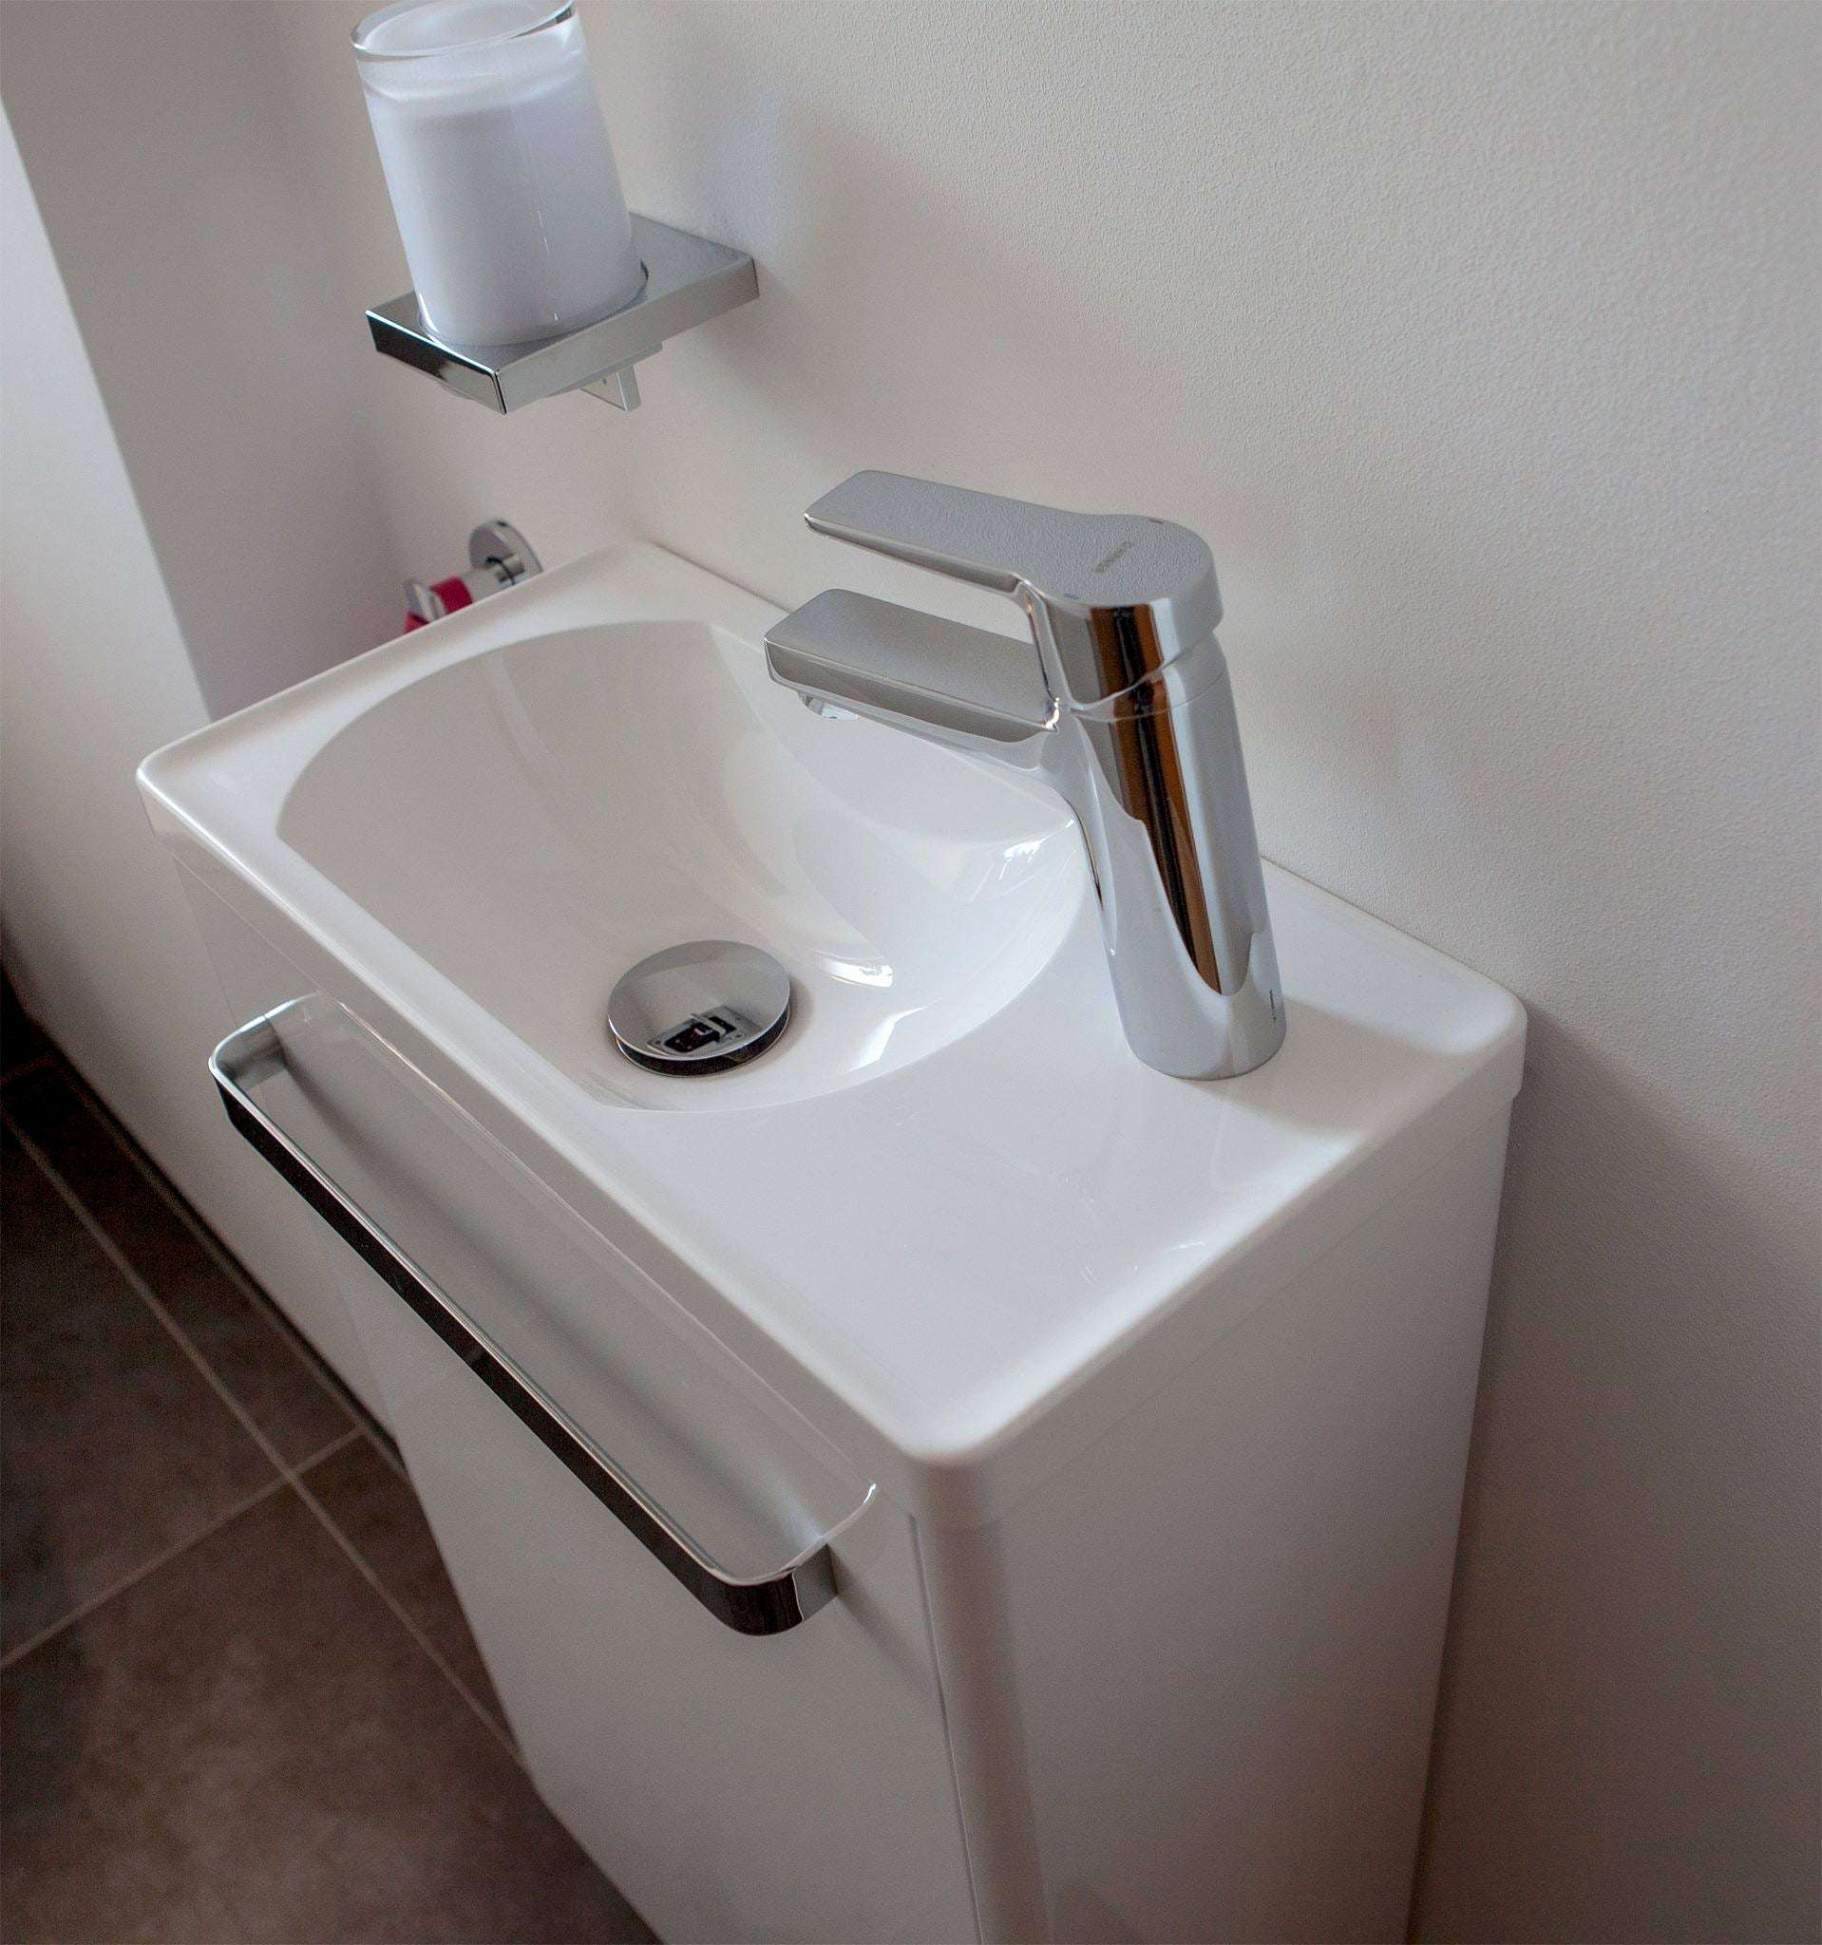 garten wc selber bauen neu toilette mit waschbecken temobardz home blog of garten wc selber bauen